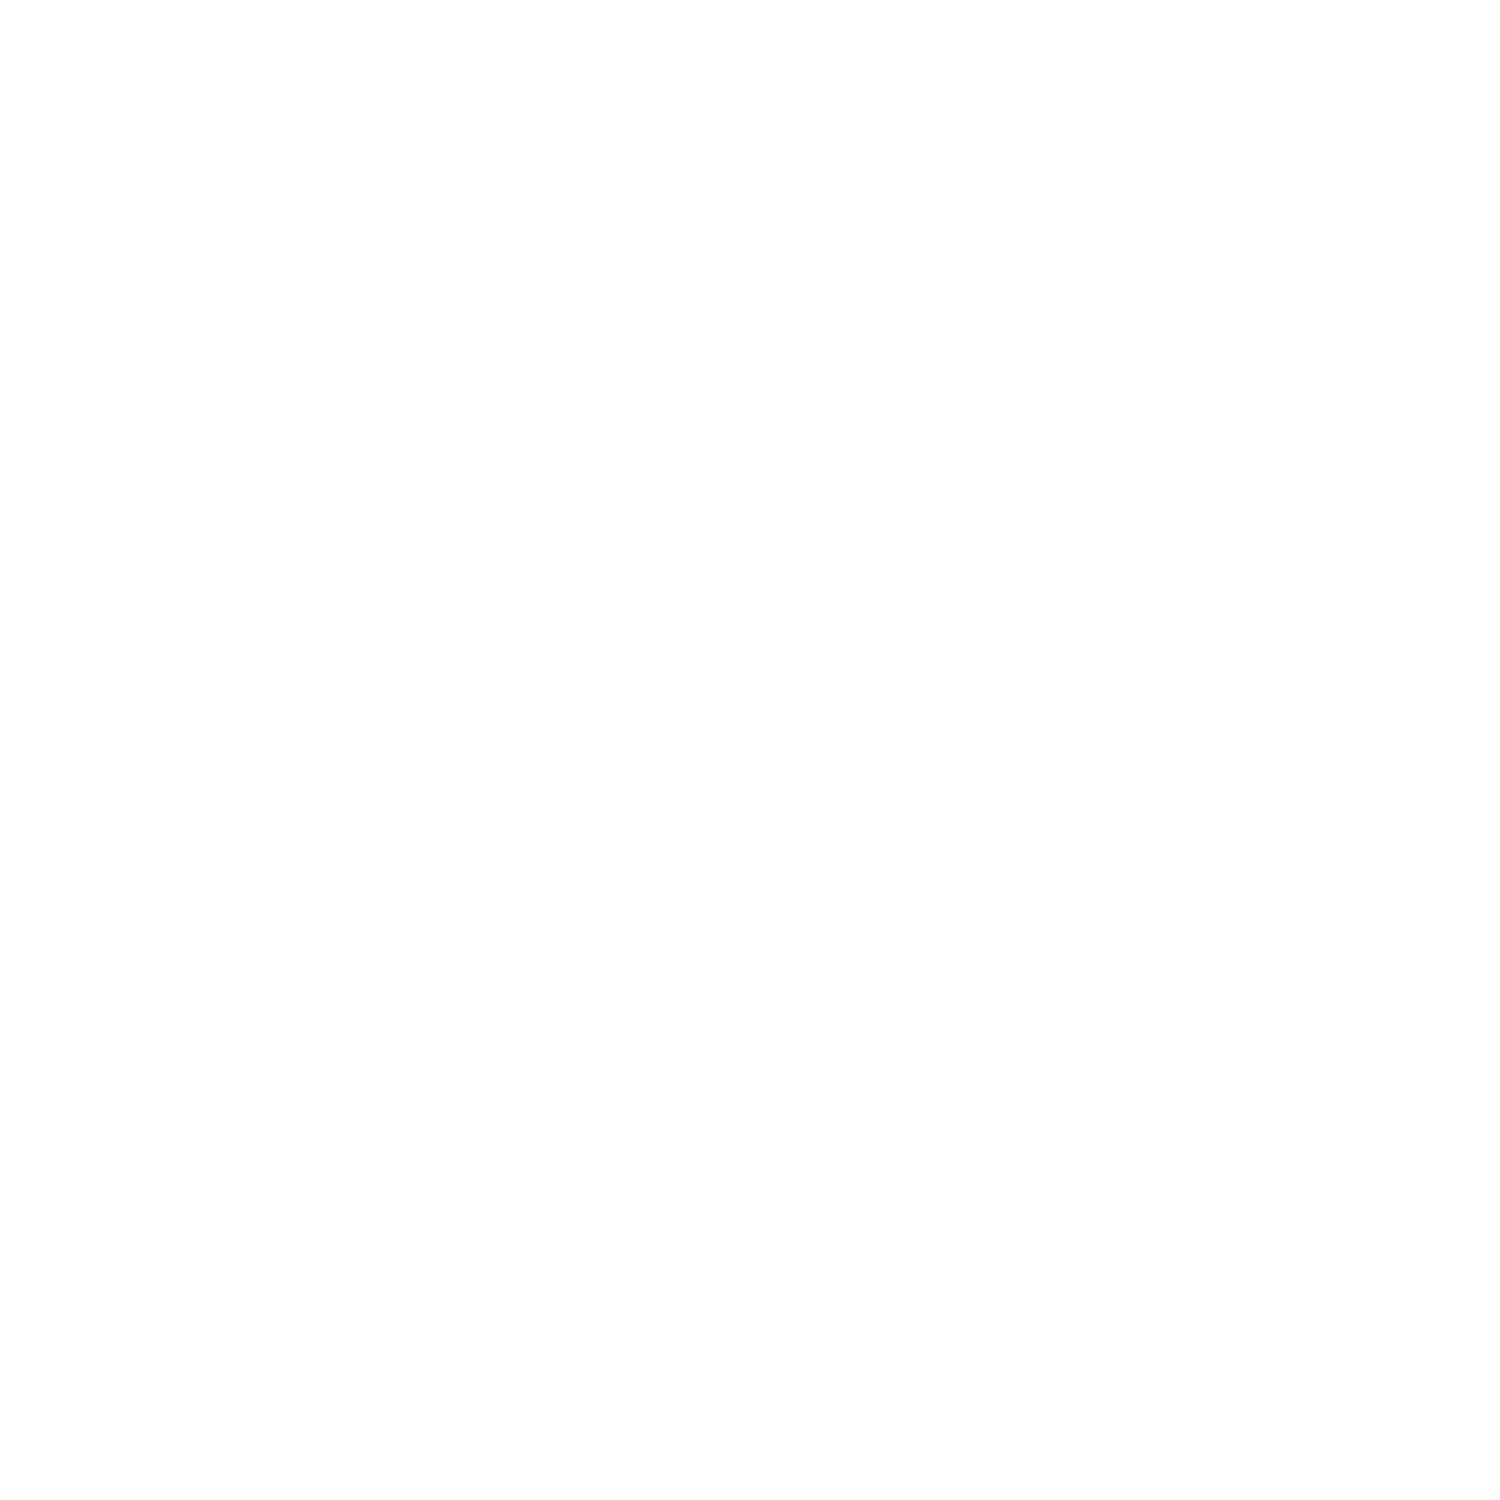 Copperhead Jones